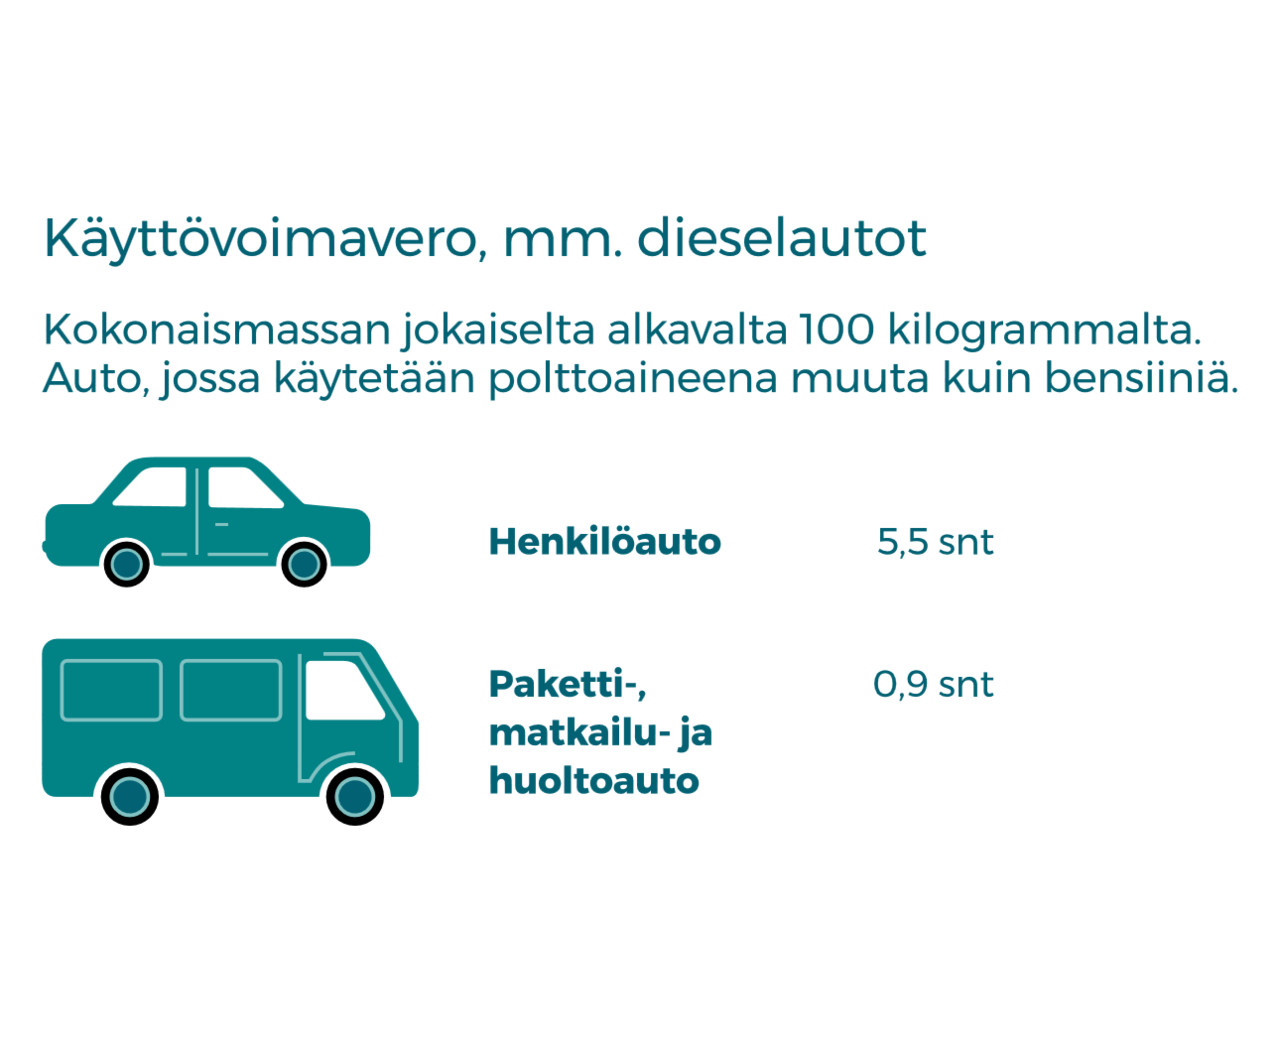 Henkilöauton ja paketti-, matkailu- ja huoltoauton käyttövoiman verotasot. Jos henkilöauton käyttövoima on diesel, käyttövoimaveron määrä päivää kohden on 5,5 senttiä jokaiselta (kokonaismassan) alkavalta sadalta kilolta. Jos paketti-, matkailu- ja huoltoauton käyttövoima on diesel, käyttövoimaveron määrä päivää kohden on 0,9 senttiä jokaiselta (kokonaismassan) alkavalta sadalta kilogrammalta.